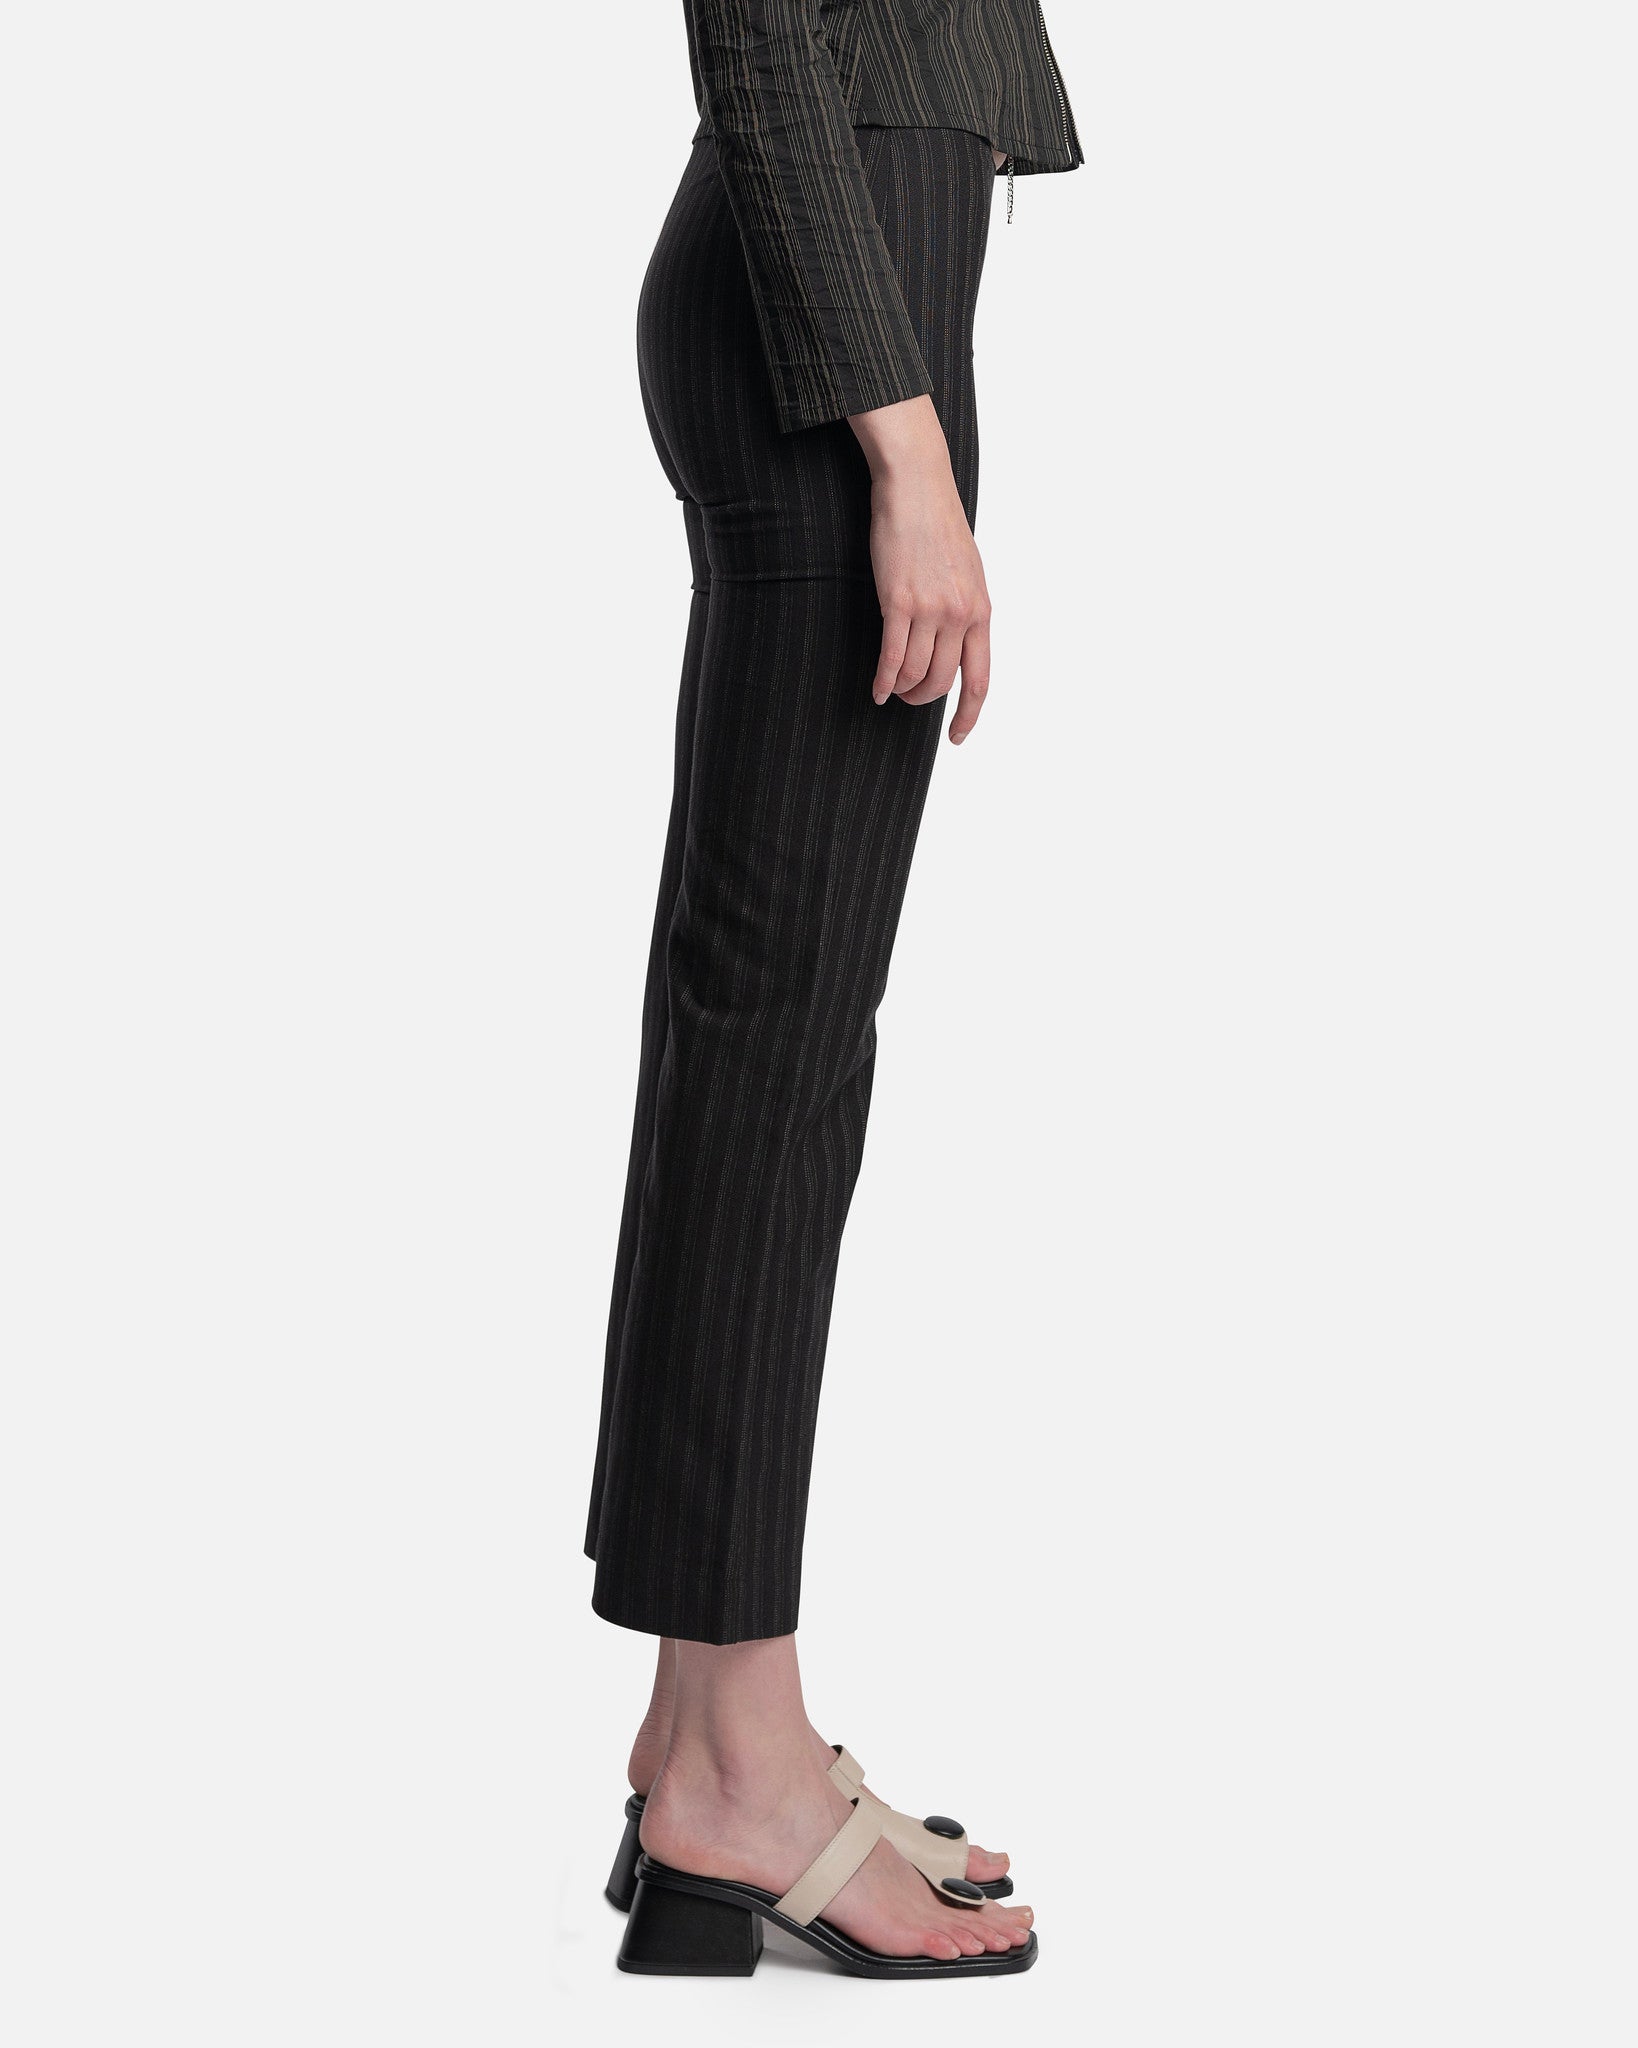 Paloma Wool Women Pants Moonless Irregular Front Opening Pant in Black